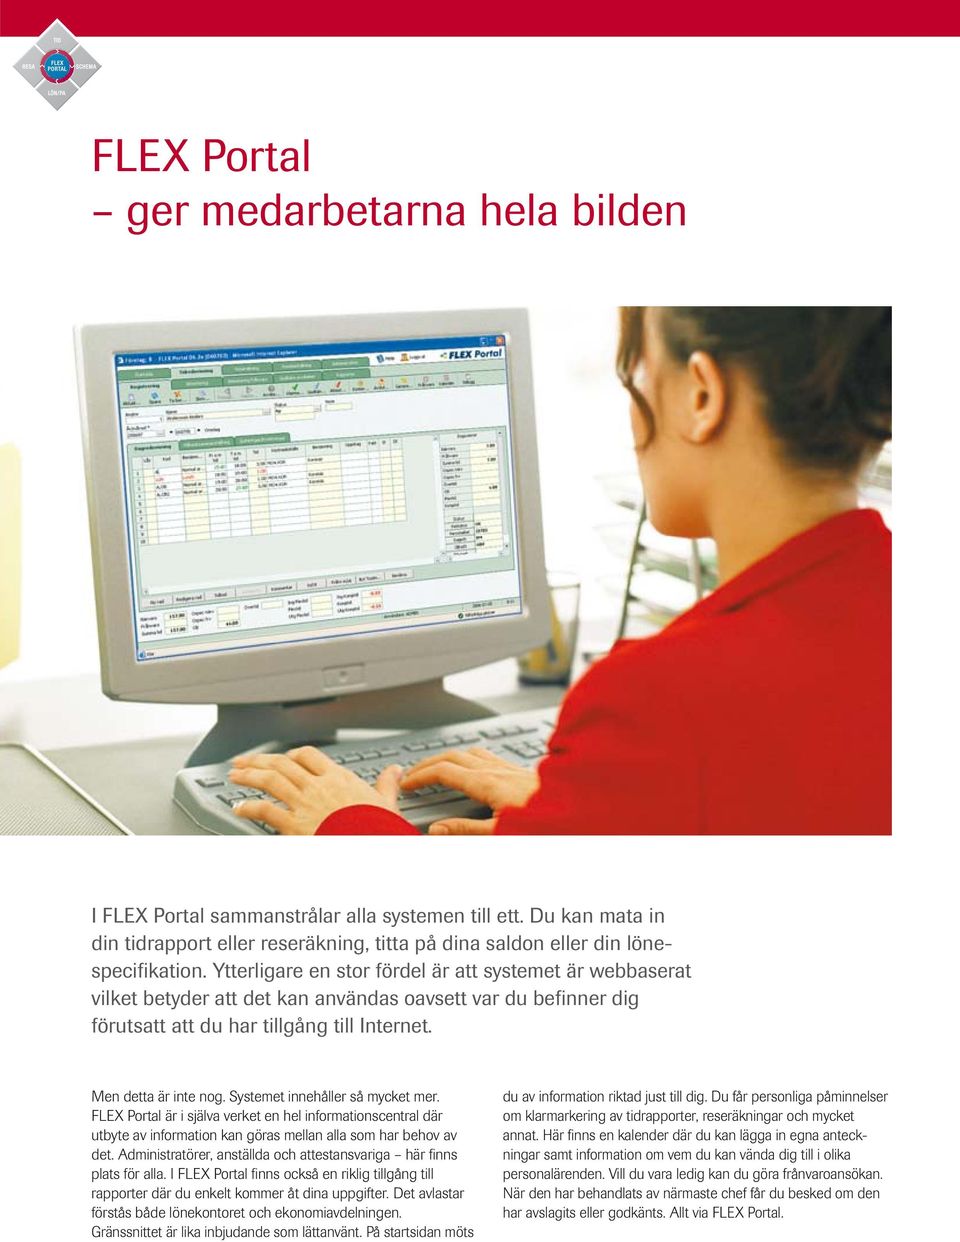 Systemet innehåller så mycket mer. FLEX Portal är i själva verket en hel informationscentral där utbyte av information kan göras mellan alla som har behov av det.